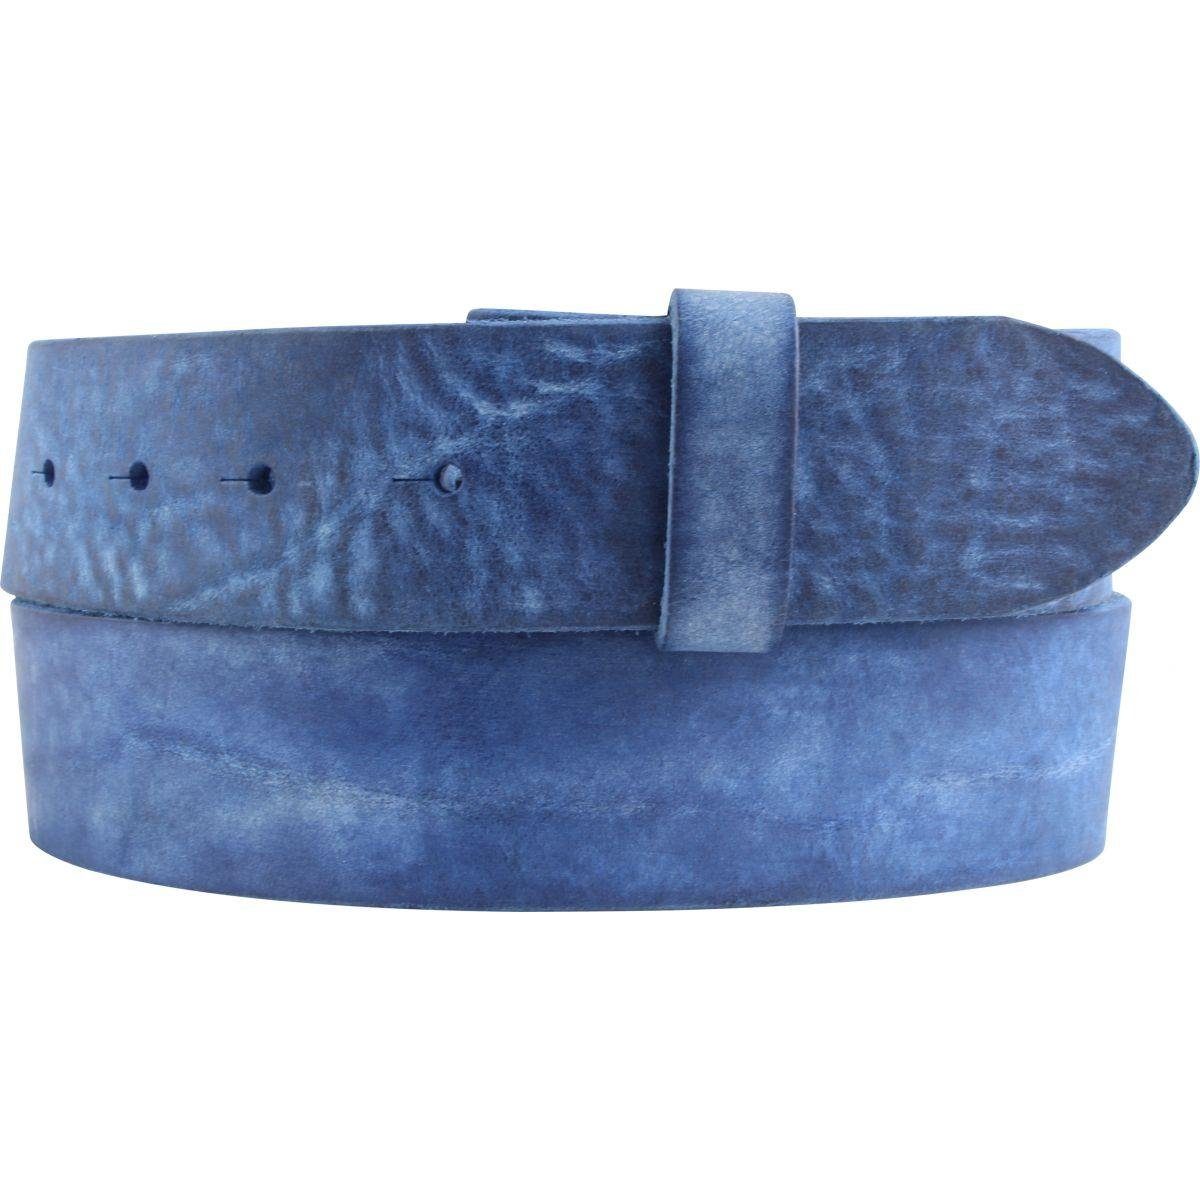 Ledergürtel Blau aus Jeans- ohne Schnalle BELTINGER weichem Gürtel - Vollrindleder Used-Look cm 4